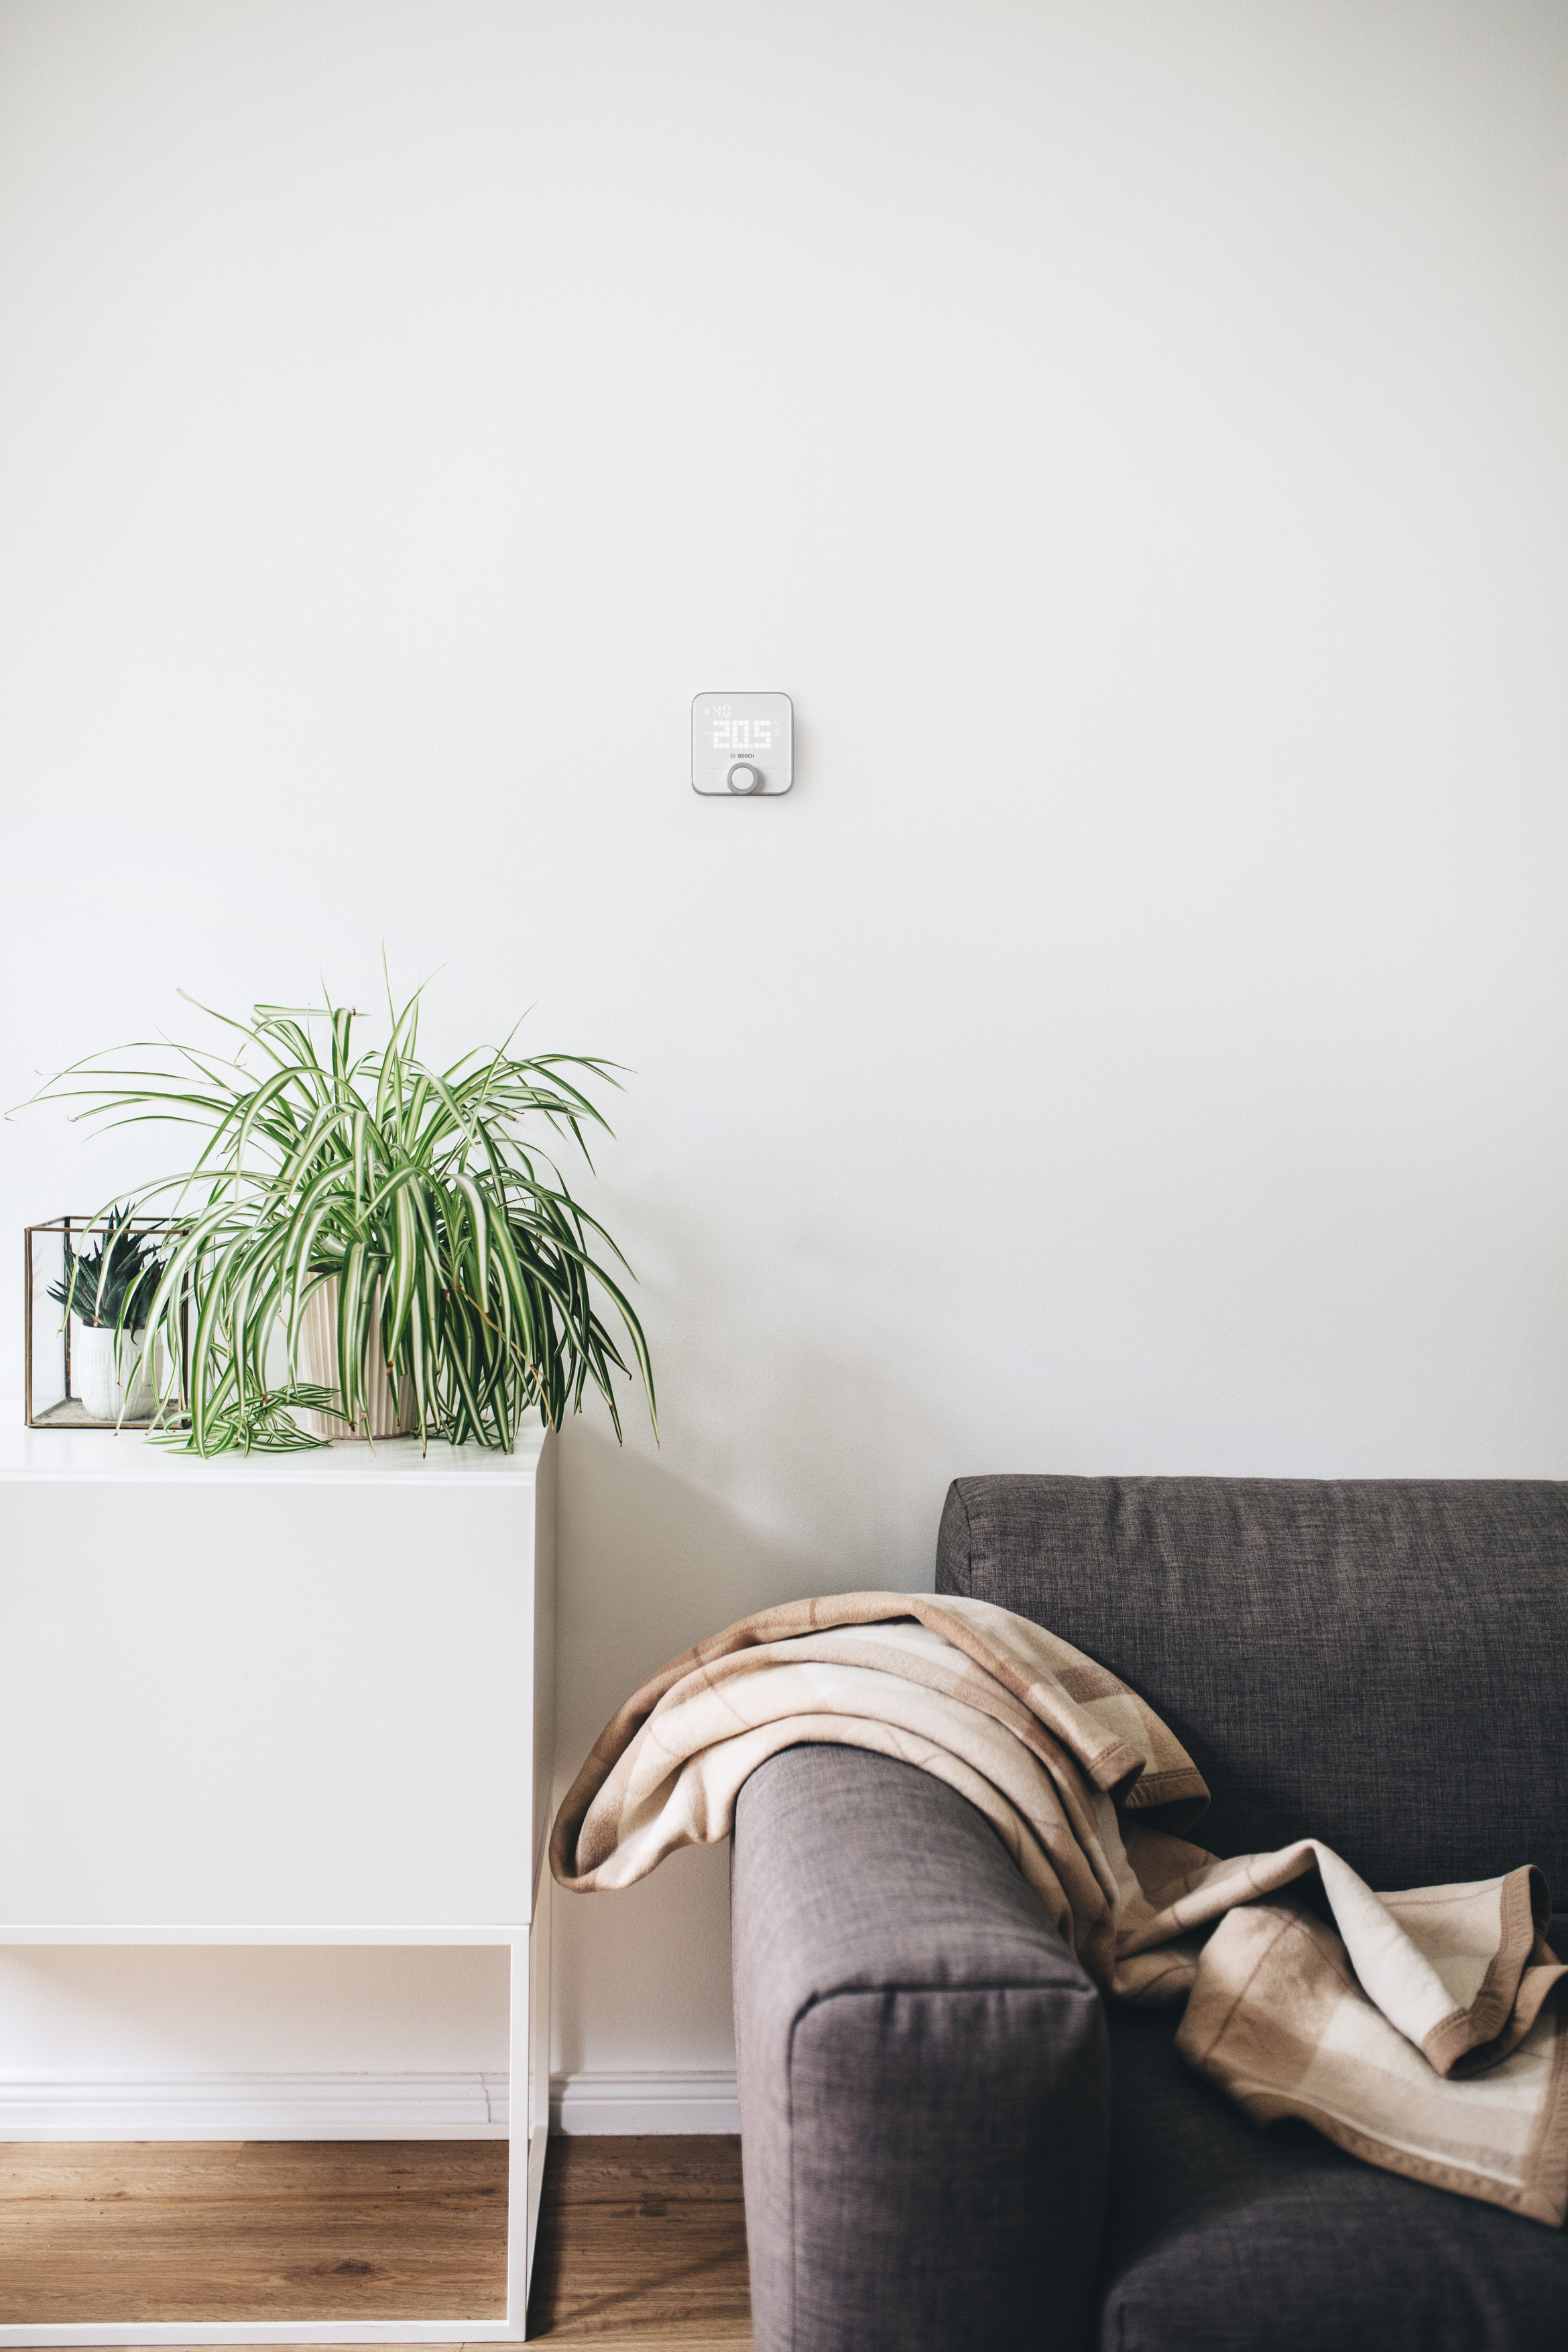 Energiesparend und komfortabel Heizen: Bosch Smart Home  Heizkörper-Thermostat II, Raumthermostat II und Raumthermostat II 230 V -  Bosch Media Service